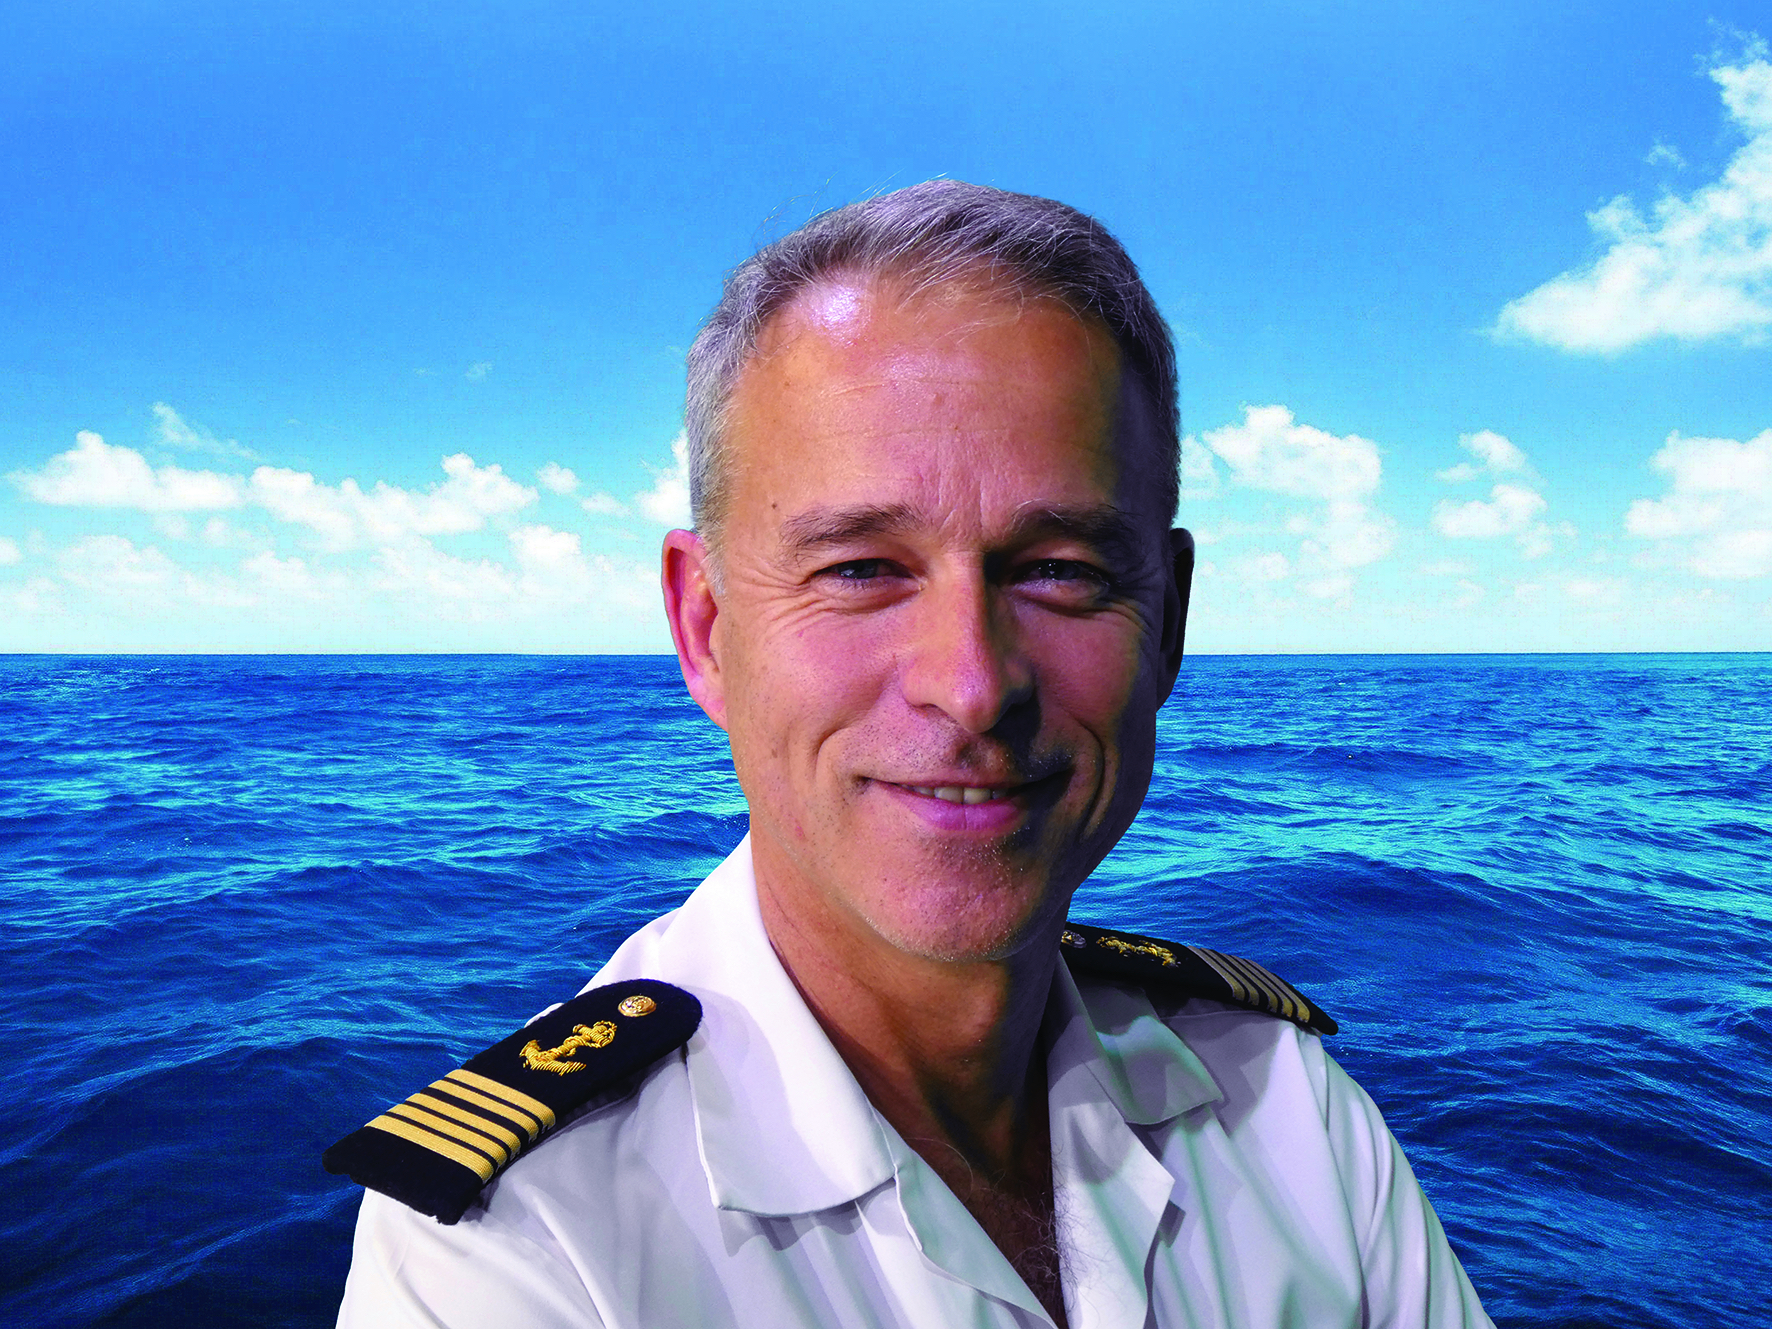 Rencontre avec David Samson, capitaine de vaisseau, commandant du recrutement de la Marine nationale